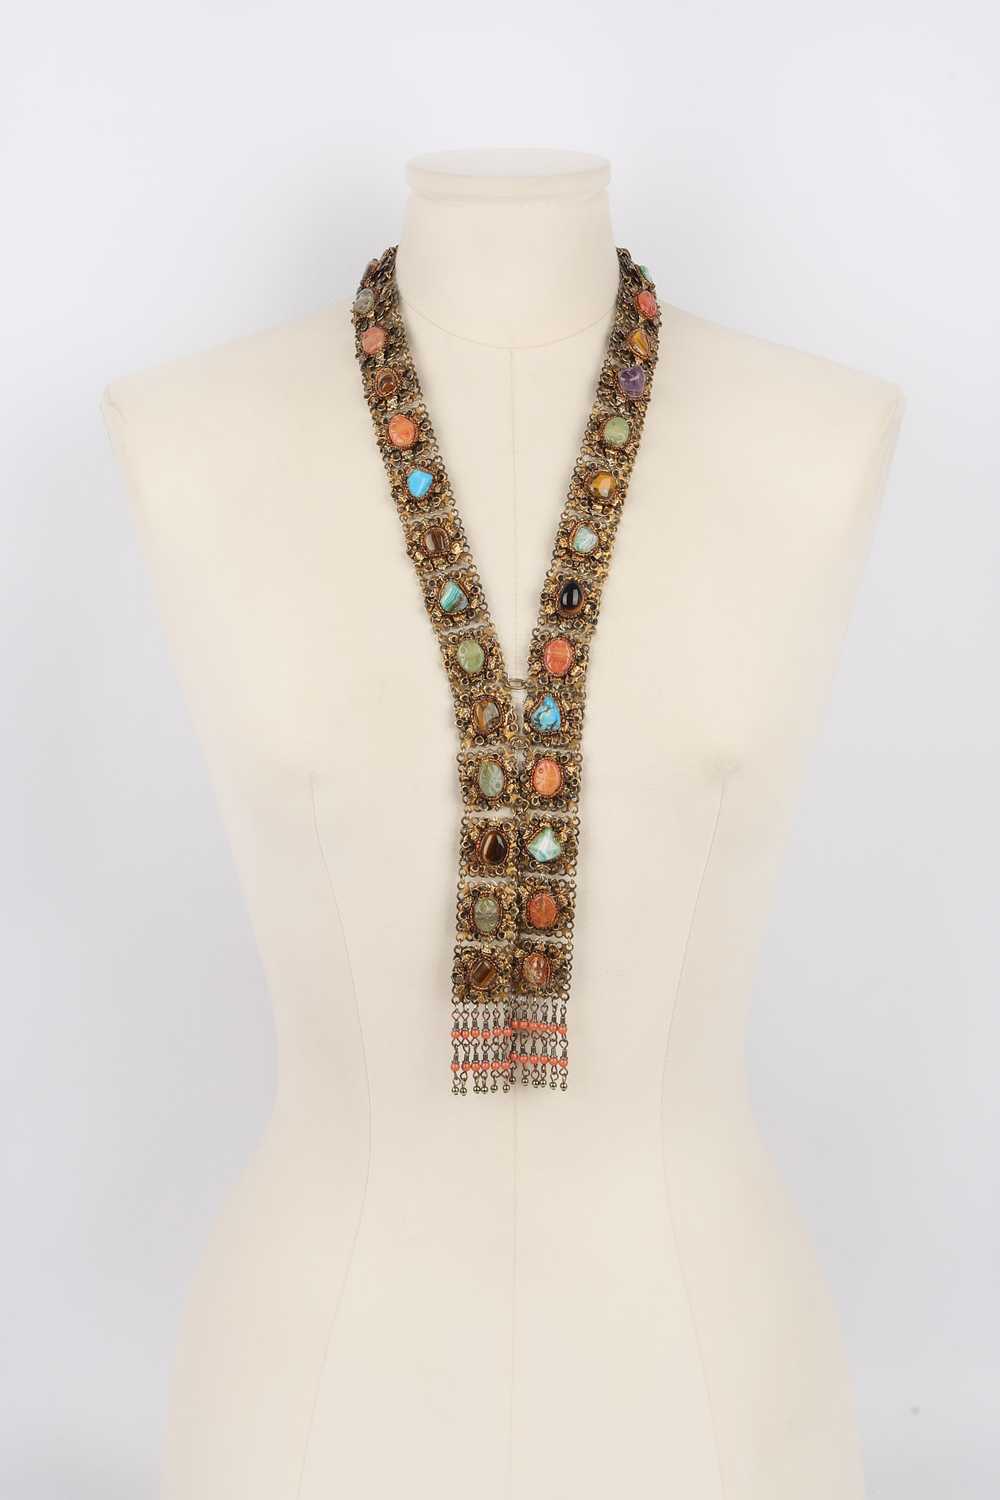 Yves Saint Laurent necklace Haute Couture - image 3